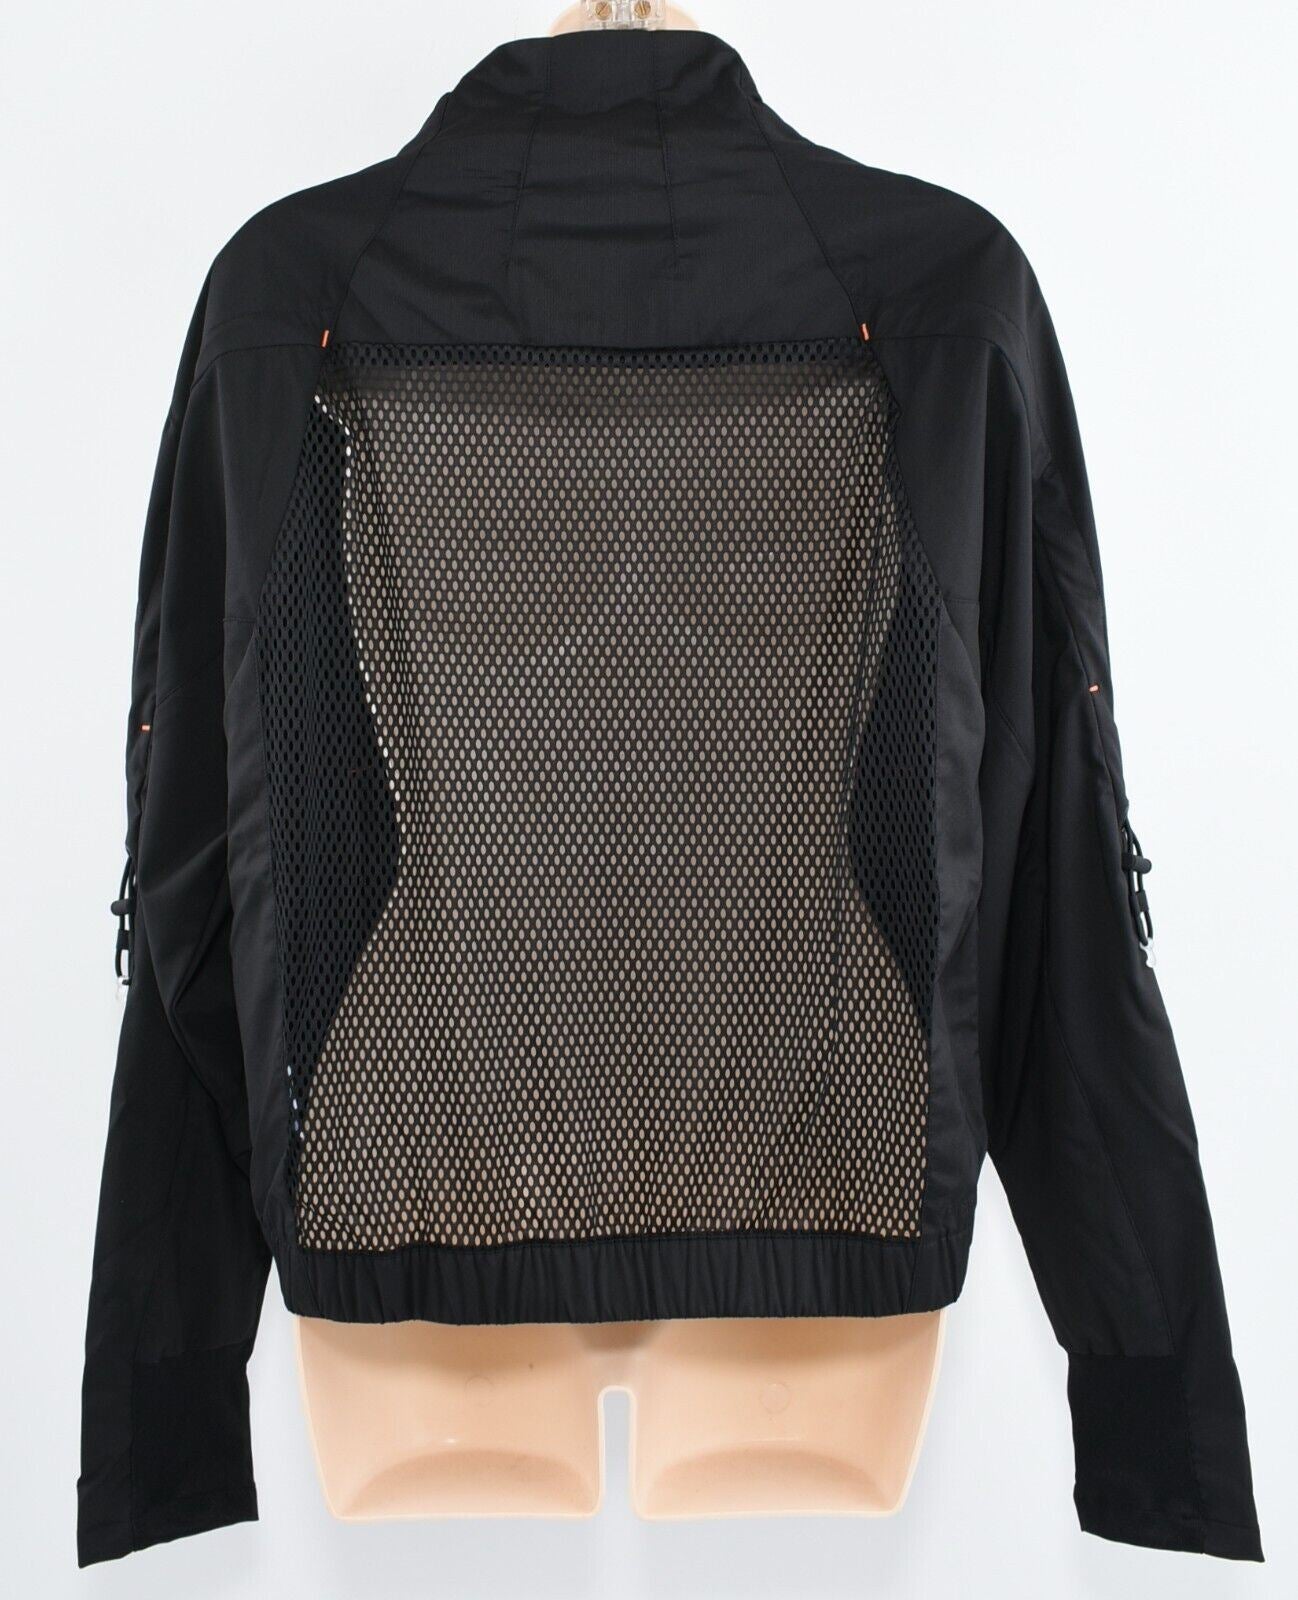 ADIDAS Activewear: Women's Primeblue Short Track Jacket, Black, size S UK 8-10